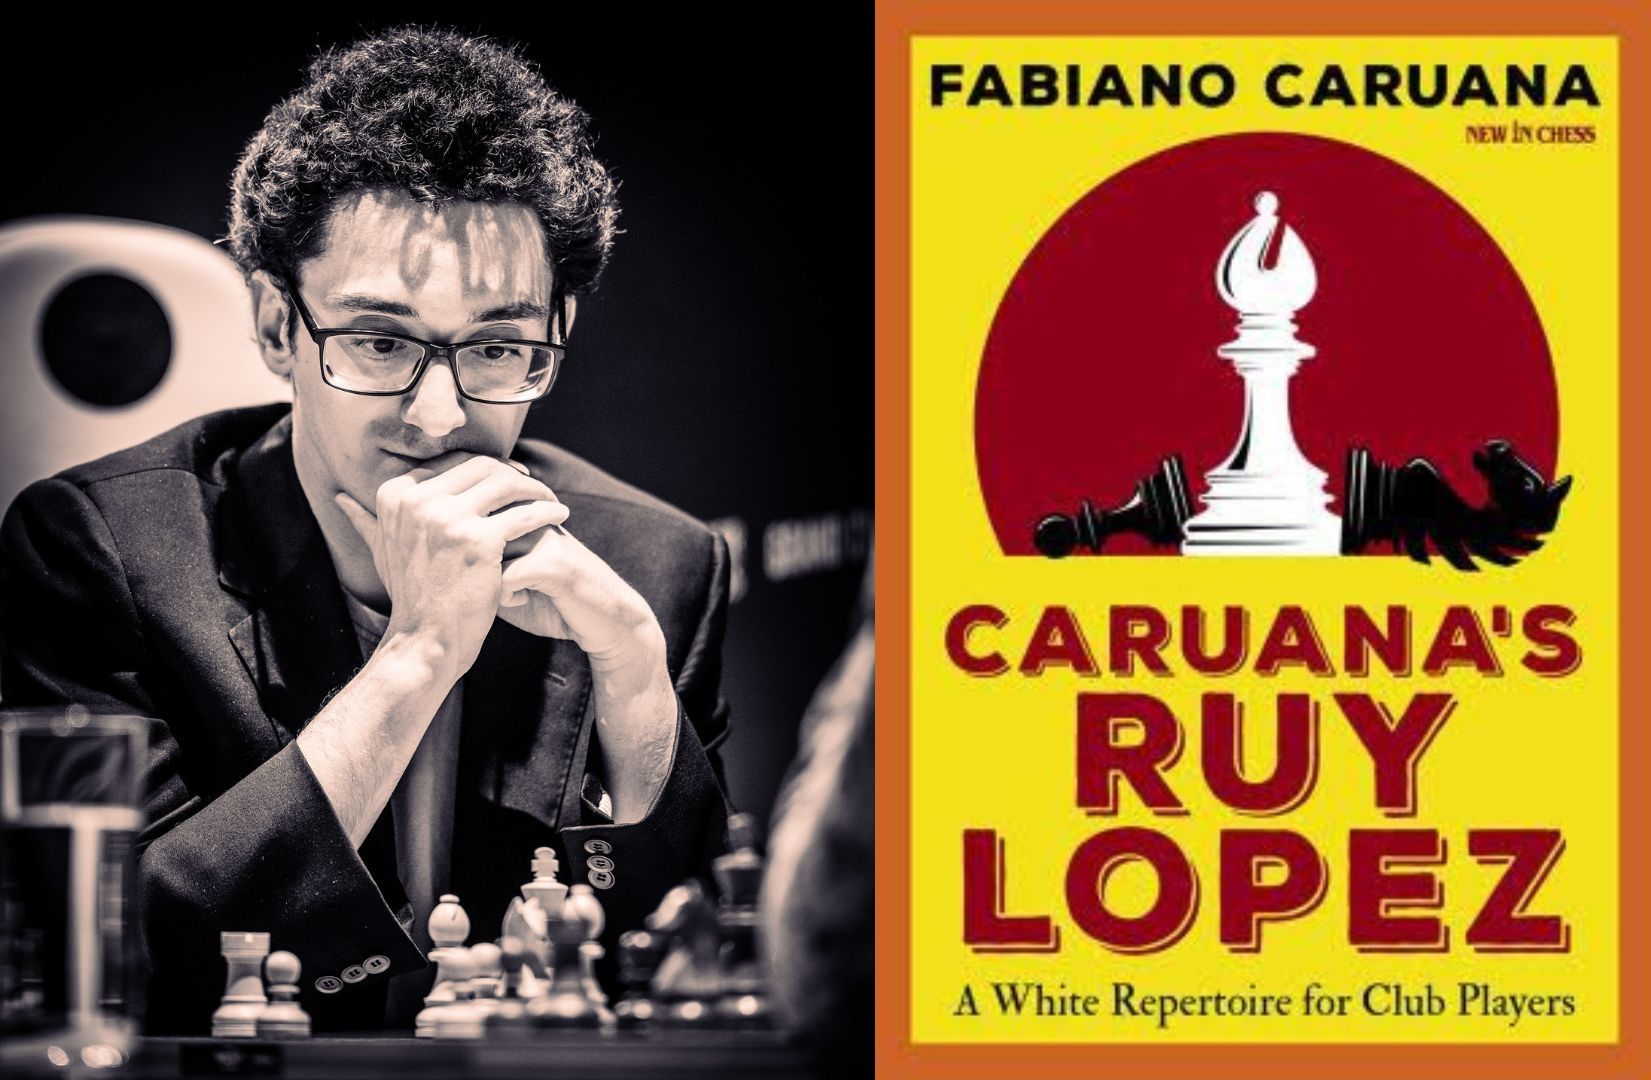 Caruana's Ruy Lopez: A White Repertoire for Club Players by Fabiano Caruana